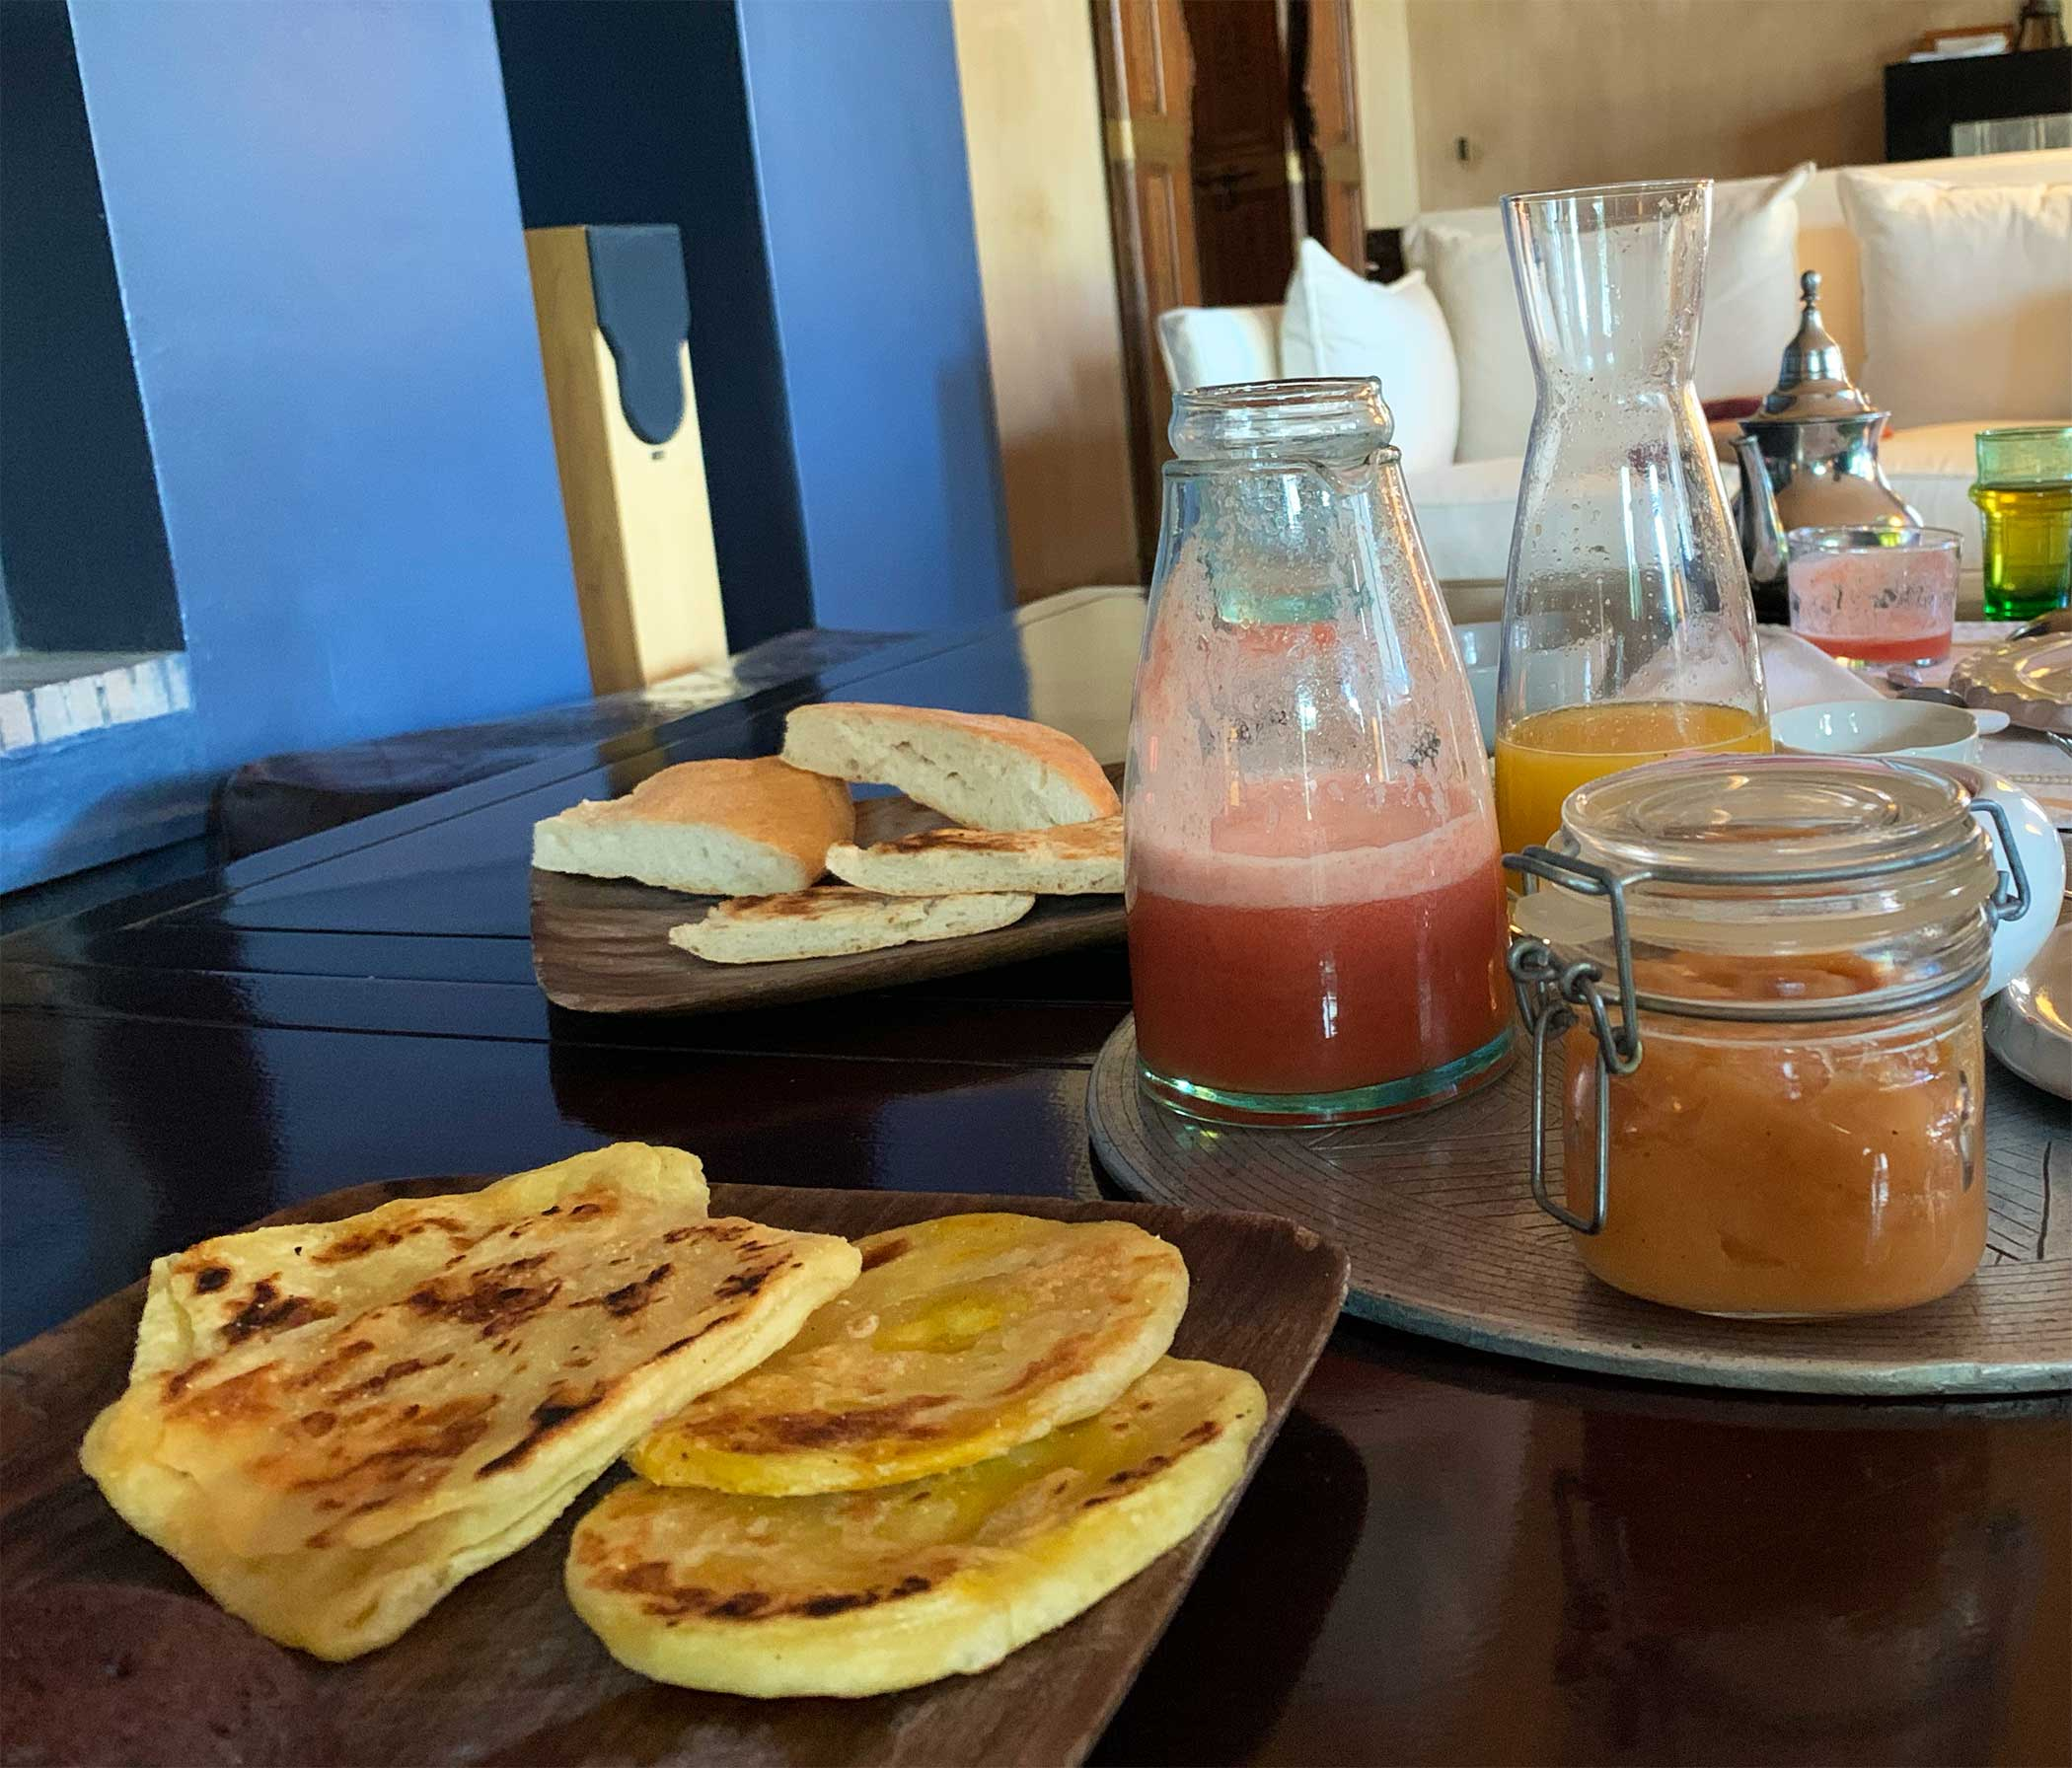 Msemen bread, a must on every Morocco breakfast.